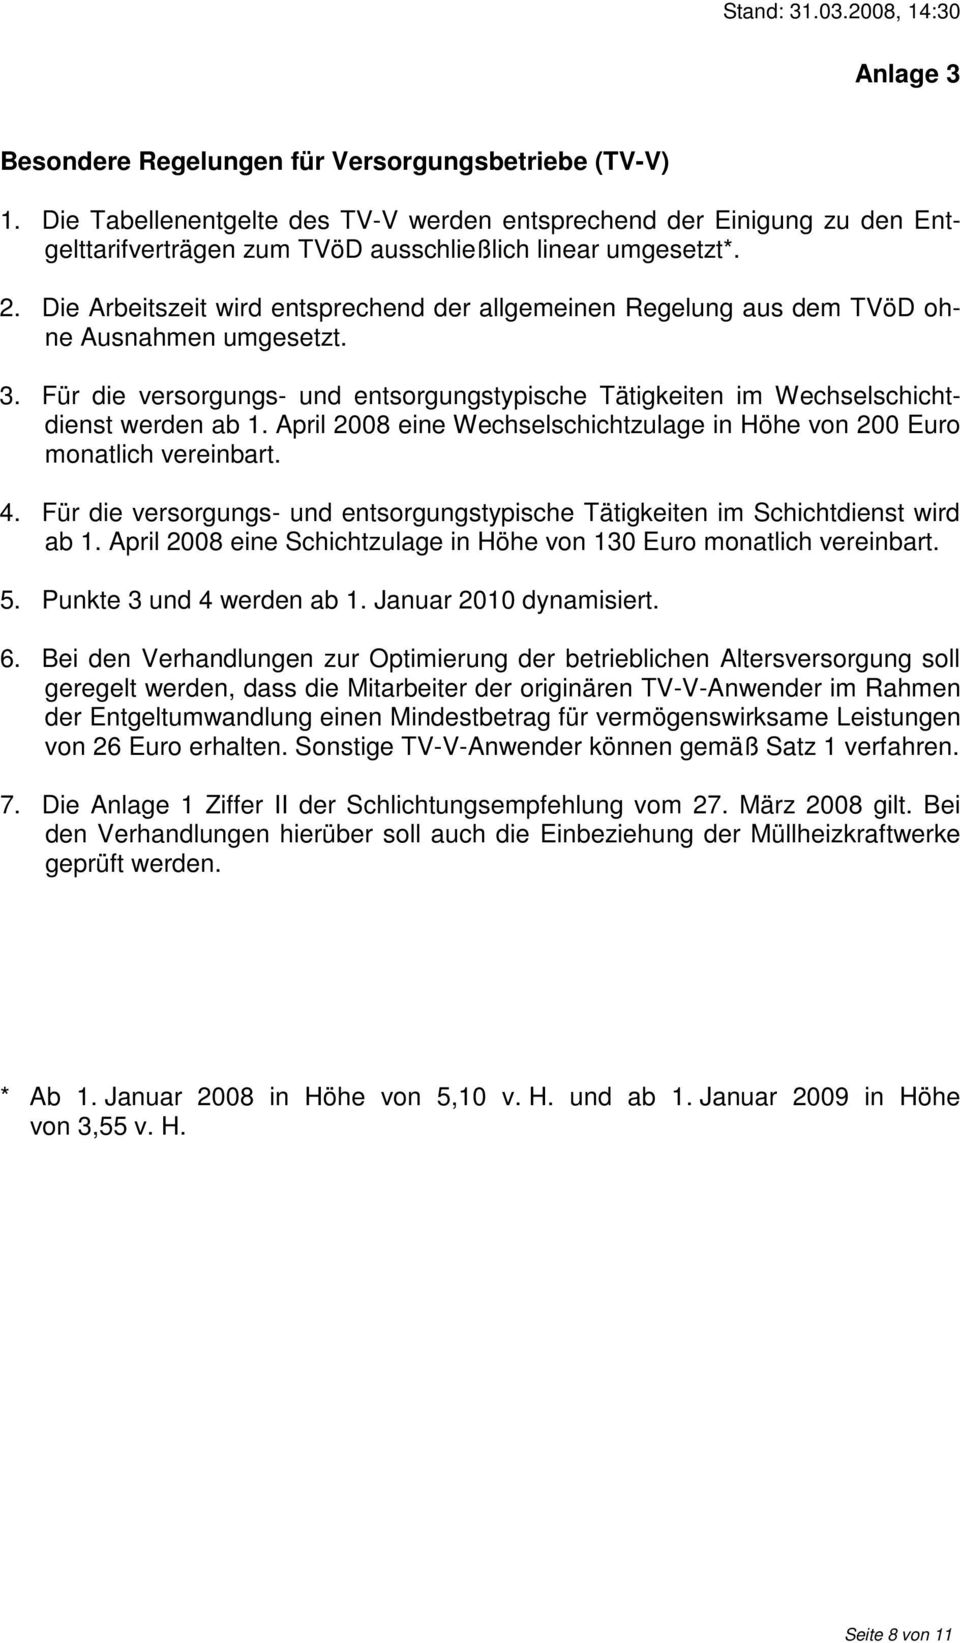 April 2008 eine Wechselschichtzulage in Höhe von 200 Euro monatlich vereinbart. 4. Für die versorgungs- und entsorgungstypische Tätigkeiten im Schichtdienst wird ab 1.